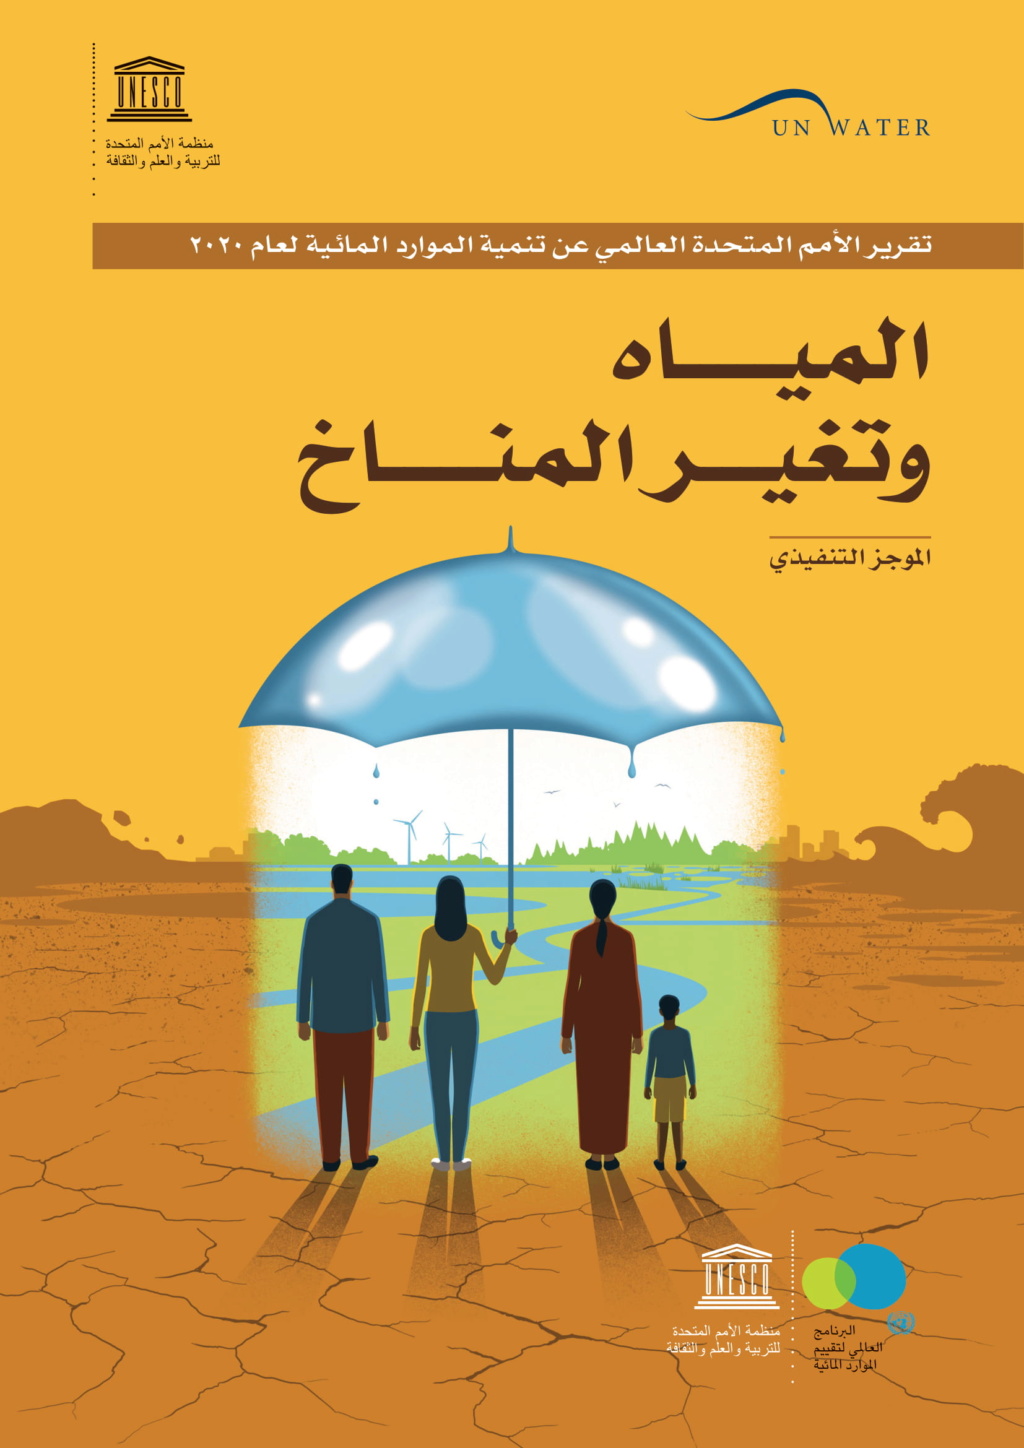 تقرير المياه وتغير المناخ بالمنطقة العربية 2020 37288210